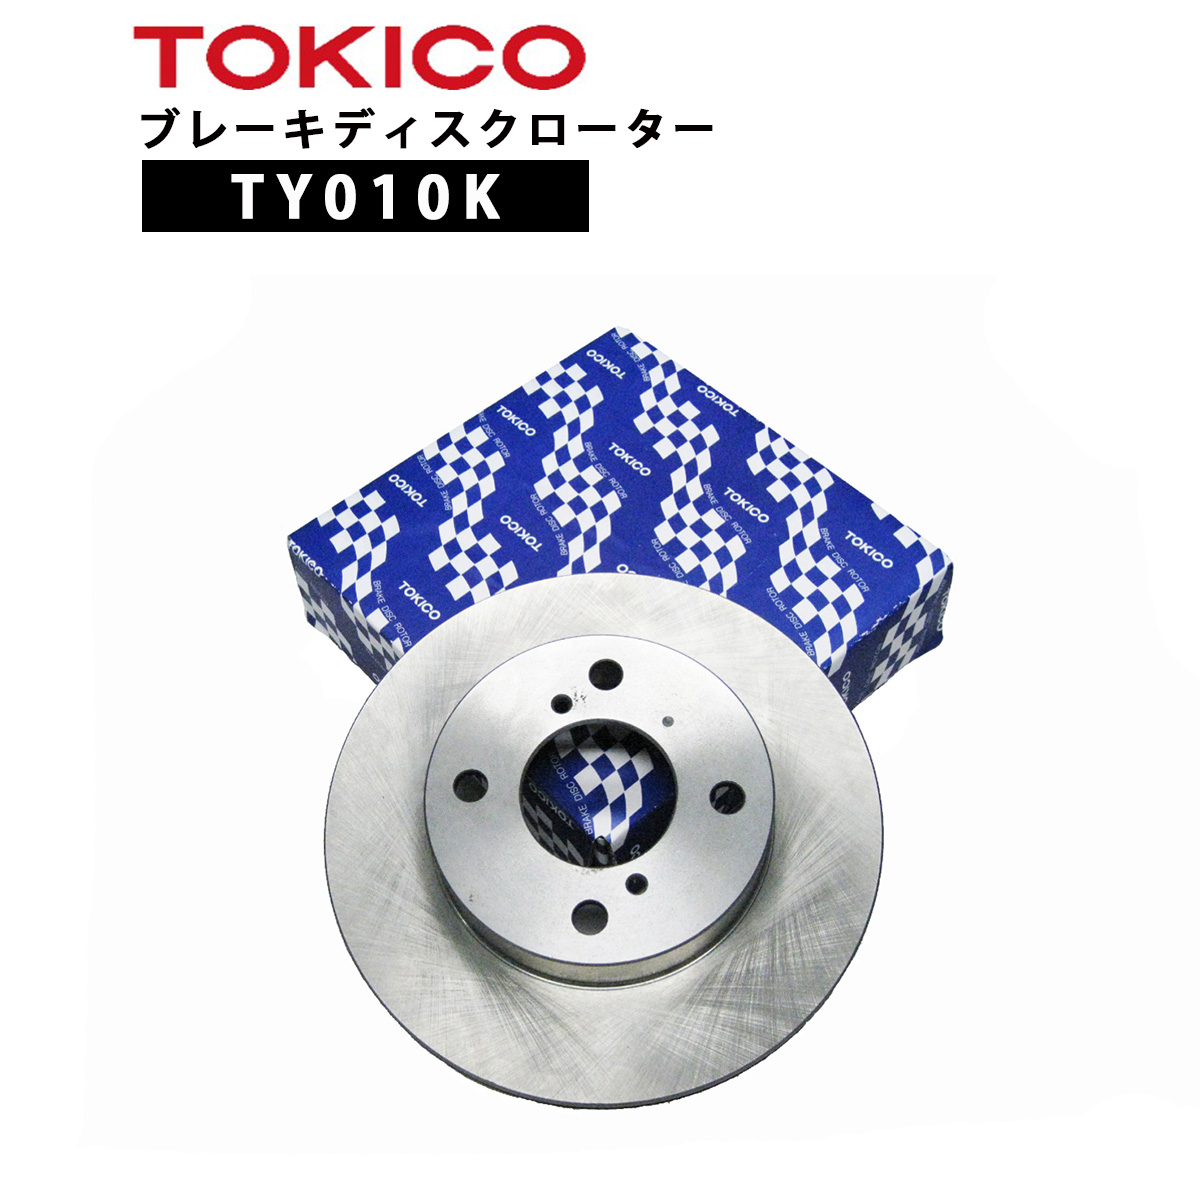 TYK TOKICO ブレーキディスクローター フロント 1枚 片側 トキコ